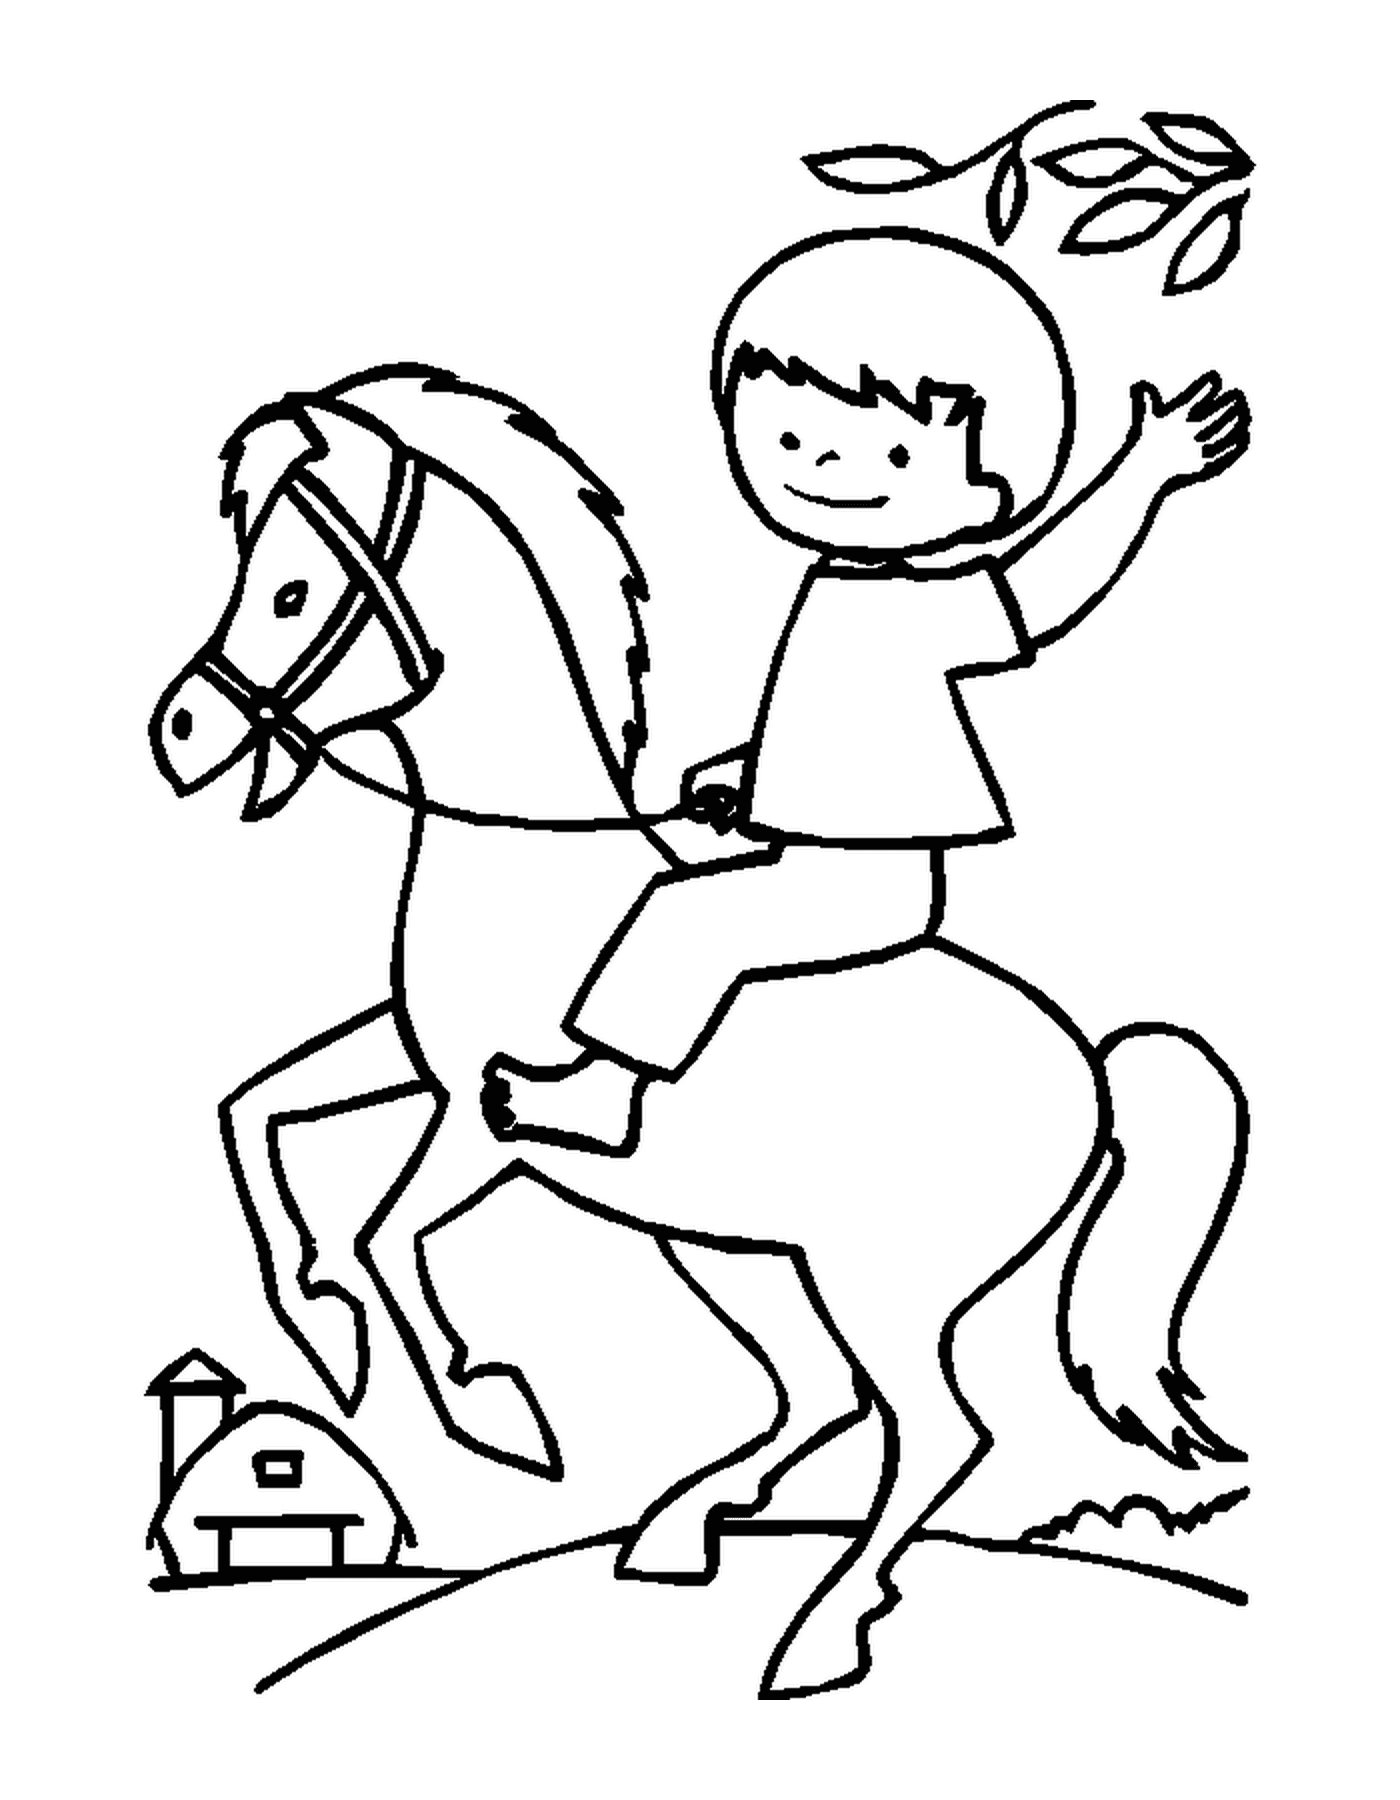  Criança montando seu cavalo feliz segurando as rédeas 